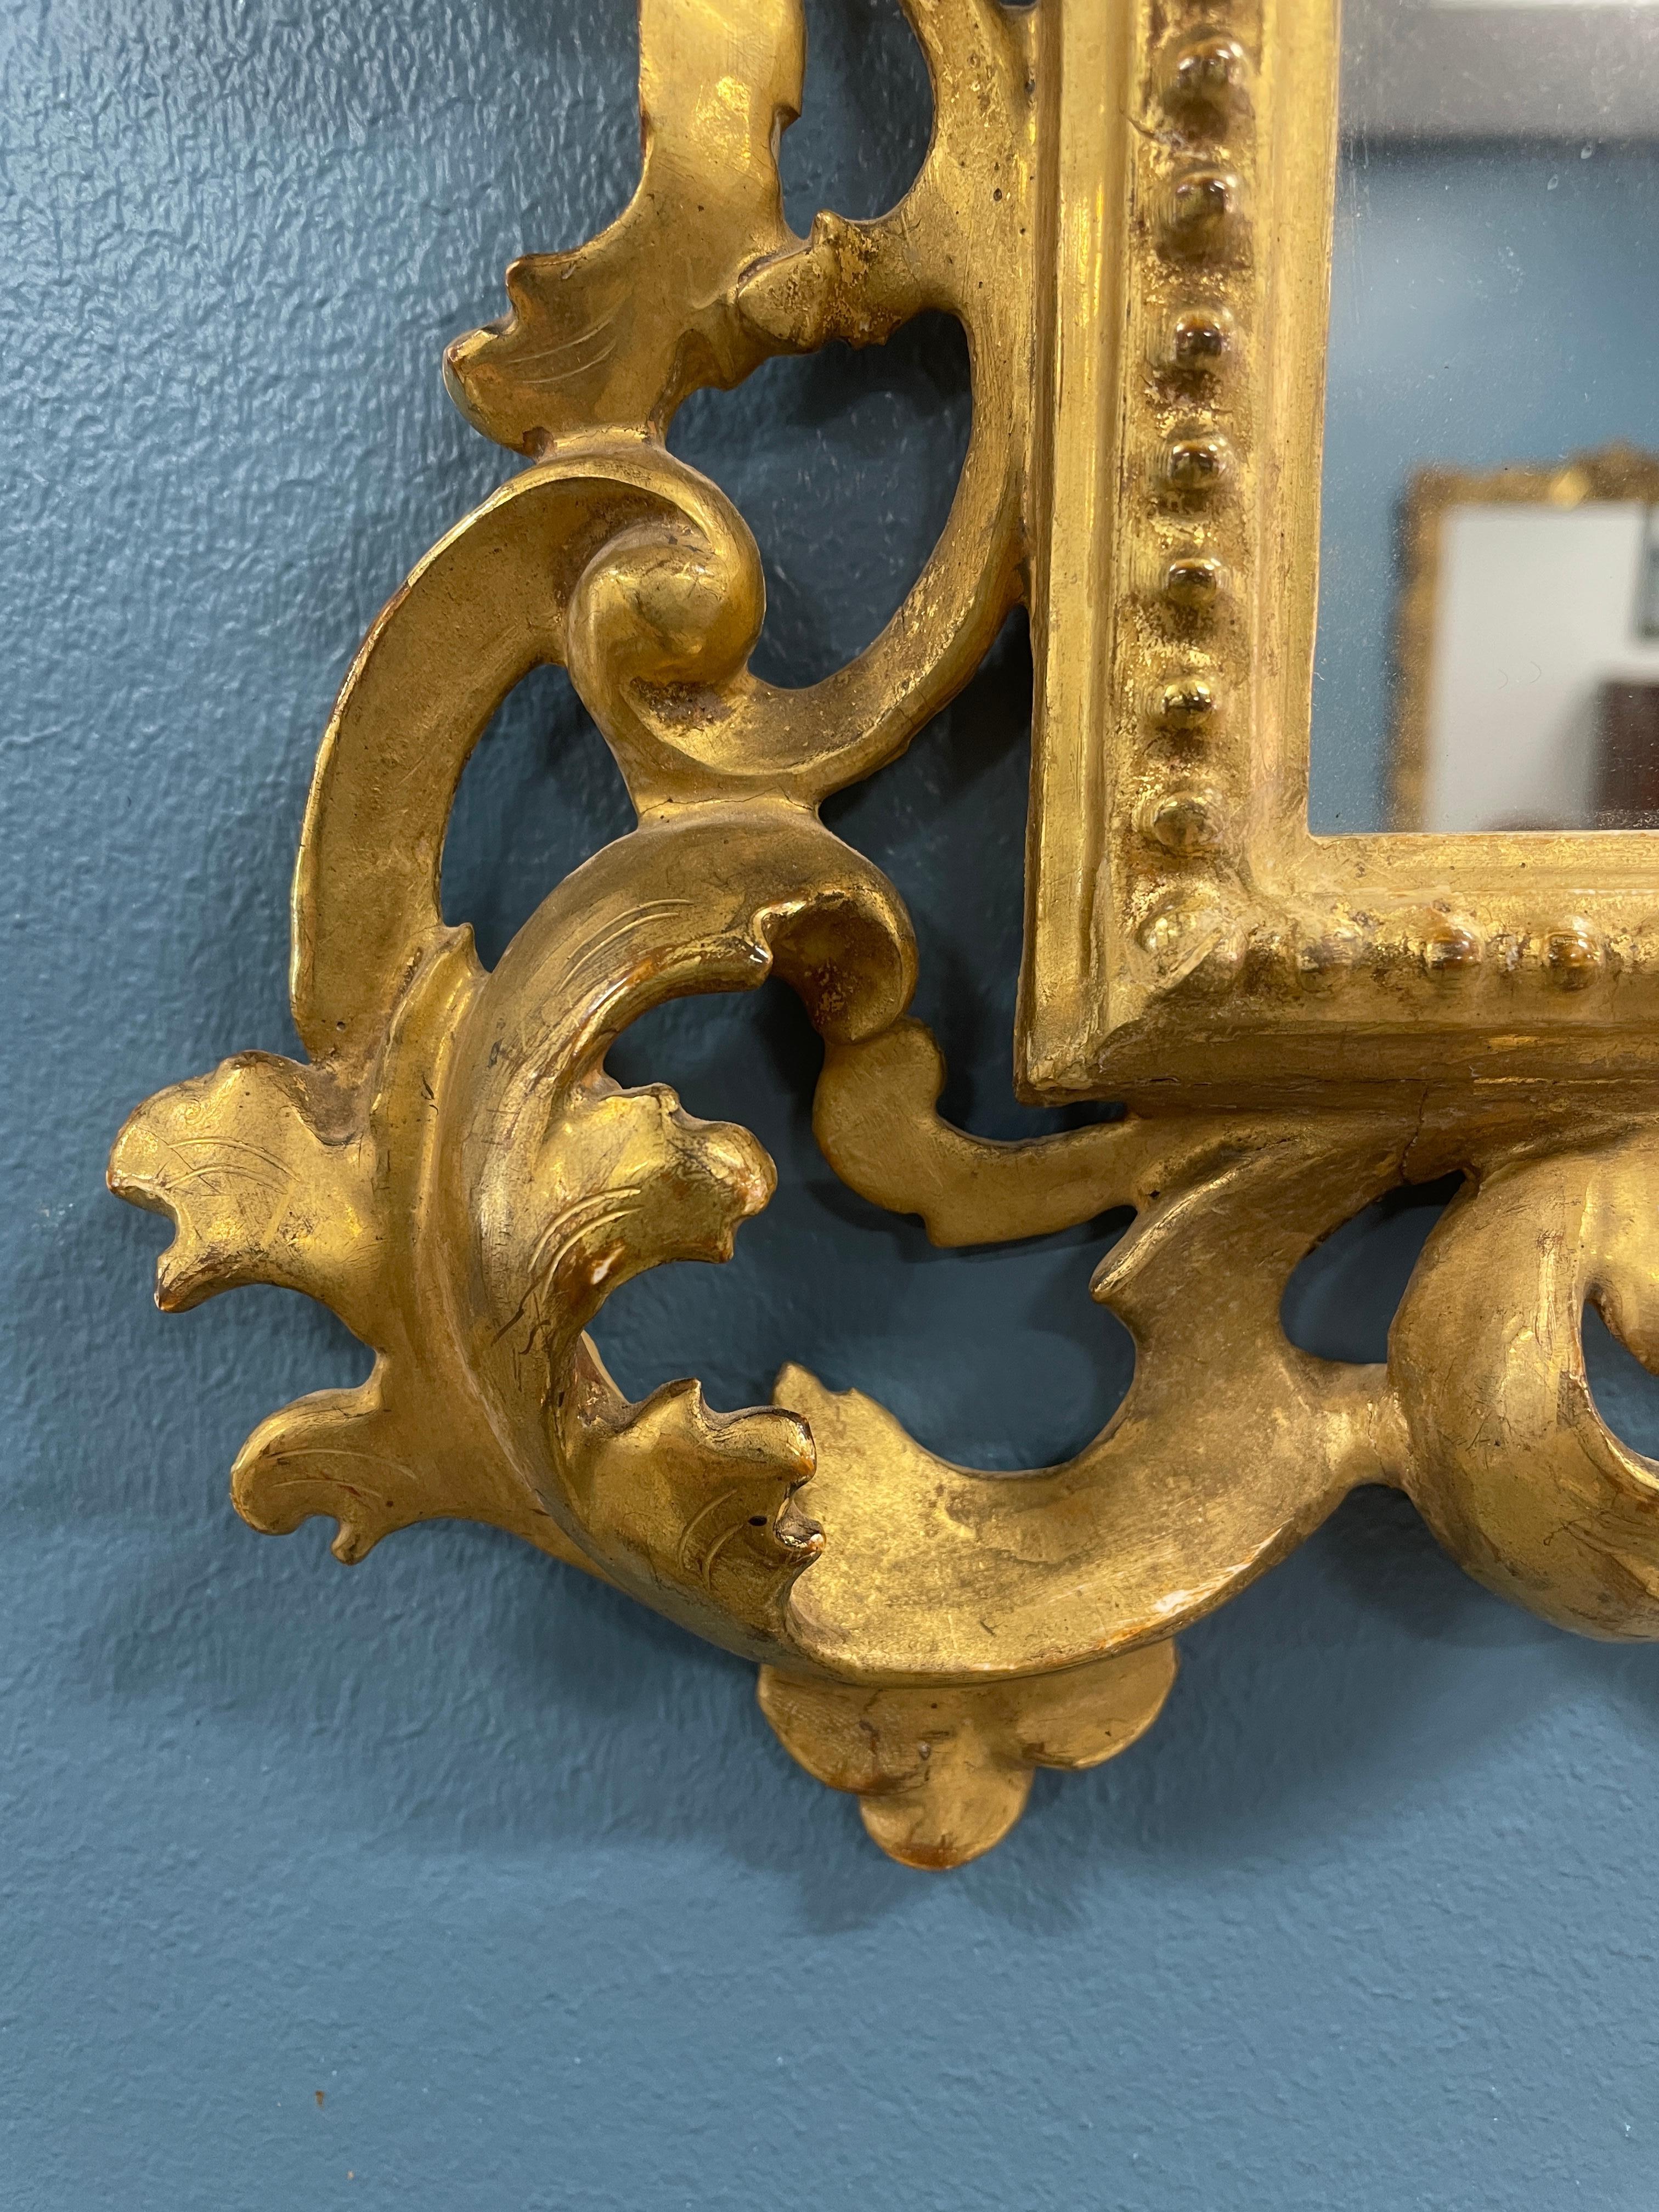 Entdecken Sie die Schönheit eines handgeschnitzten Wandspiegels aus vergoldetem Holz mit Akanthusblattdekor, der aus der Mitte des 19. Jahrhunderts stammt und in Deutschland gefertigt wurde. 

Erleben Sie die Anziehungskraft dieses exquisiten